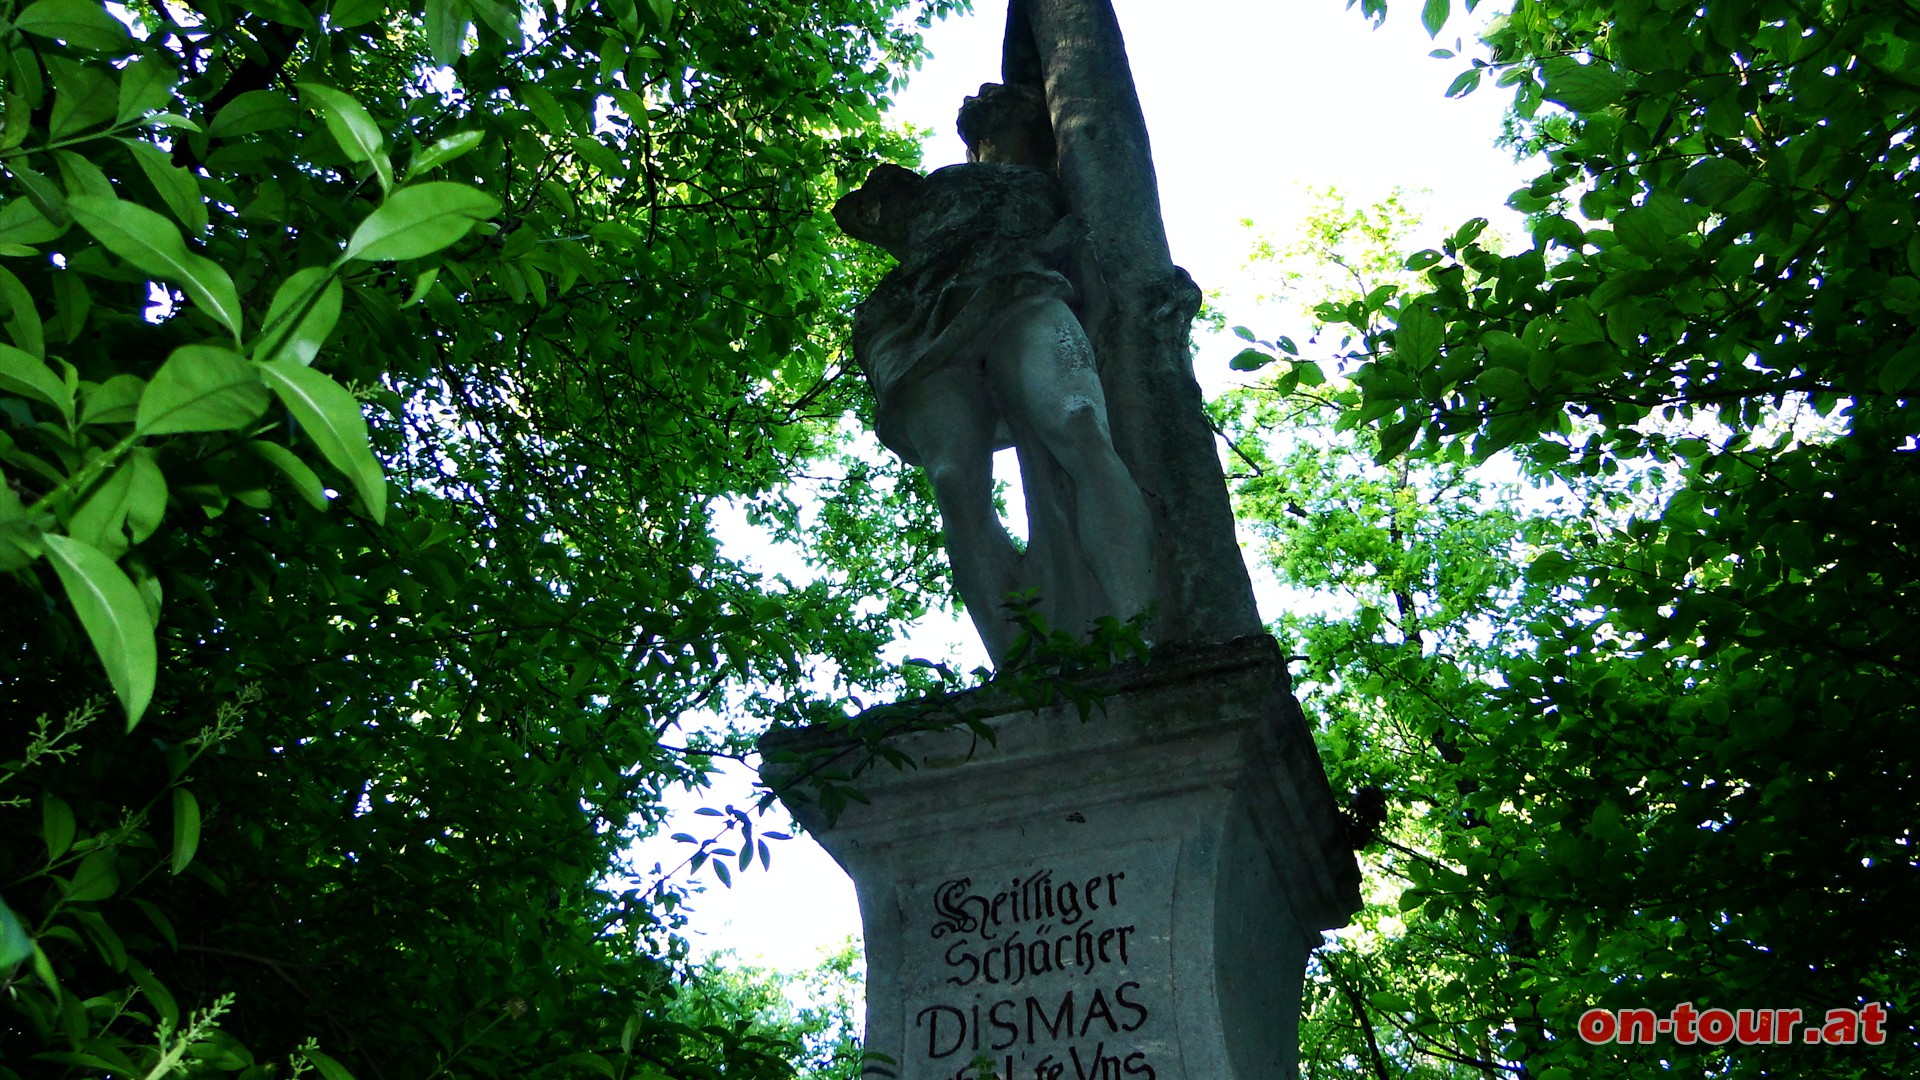 Vom Vitusberg kommend die erste Mglichkeit nach der kurzen Asphaltstrecke rechts zur Richtsttte und dem Dismas-Monument.